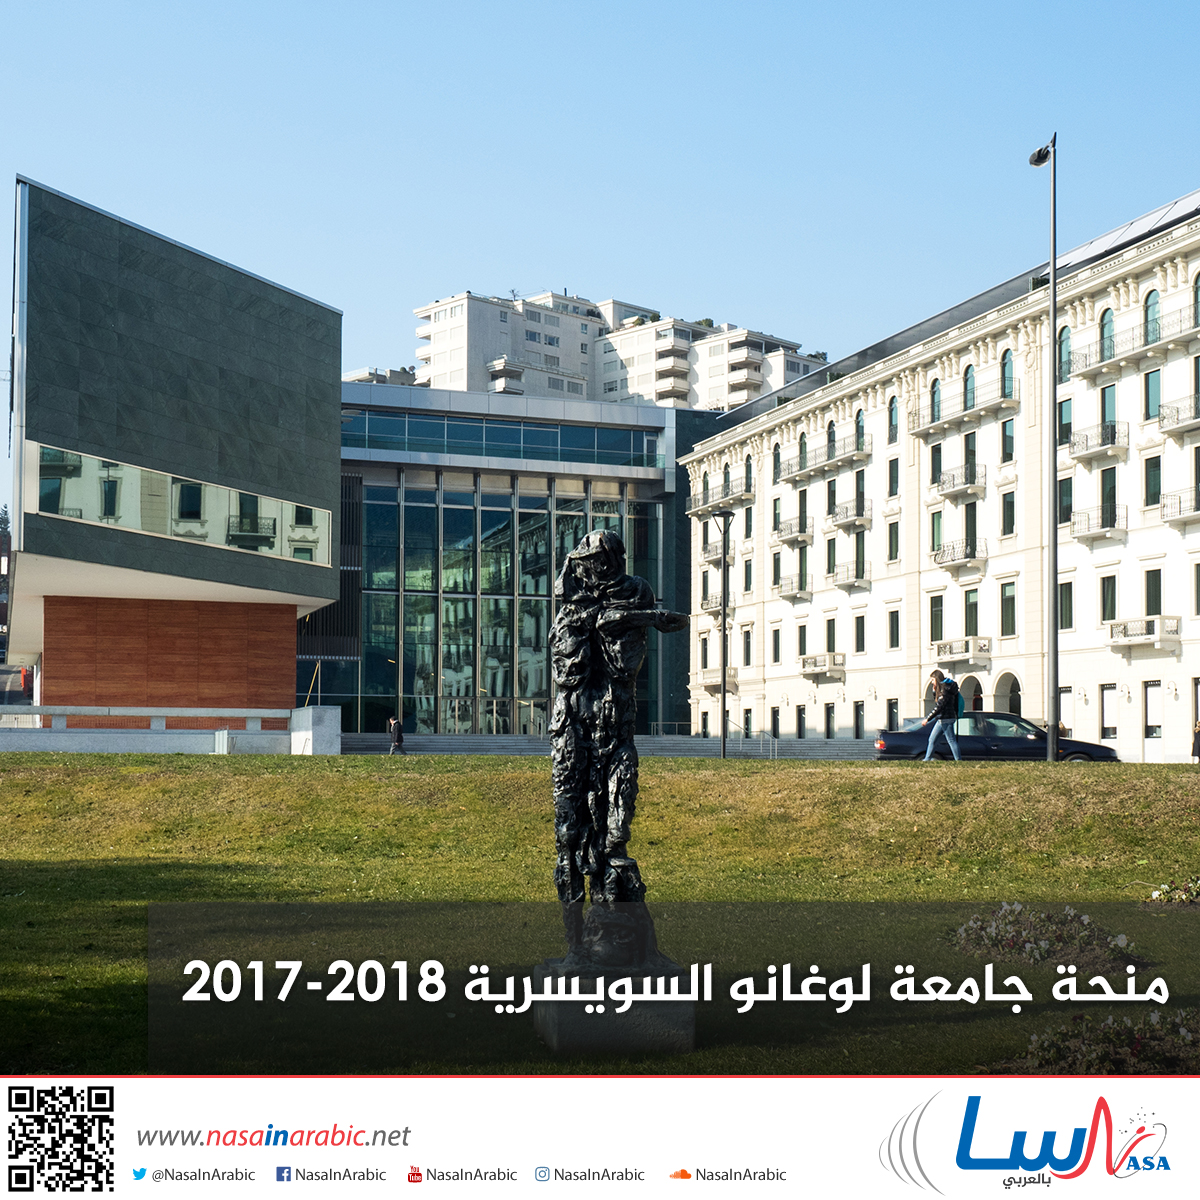 منحة جامعة لوغانو السويسرية 2017-2018